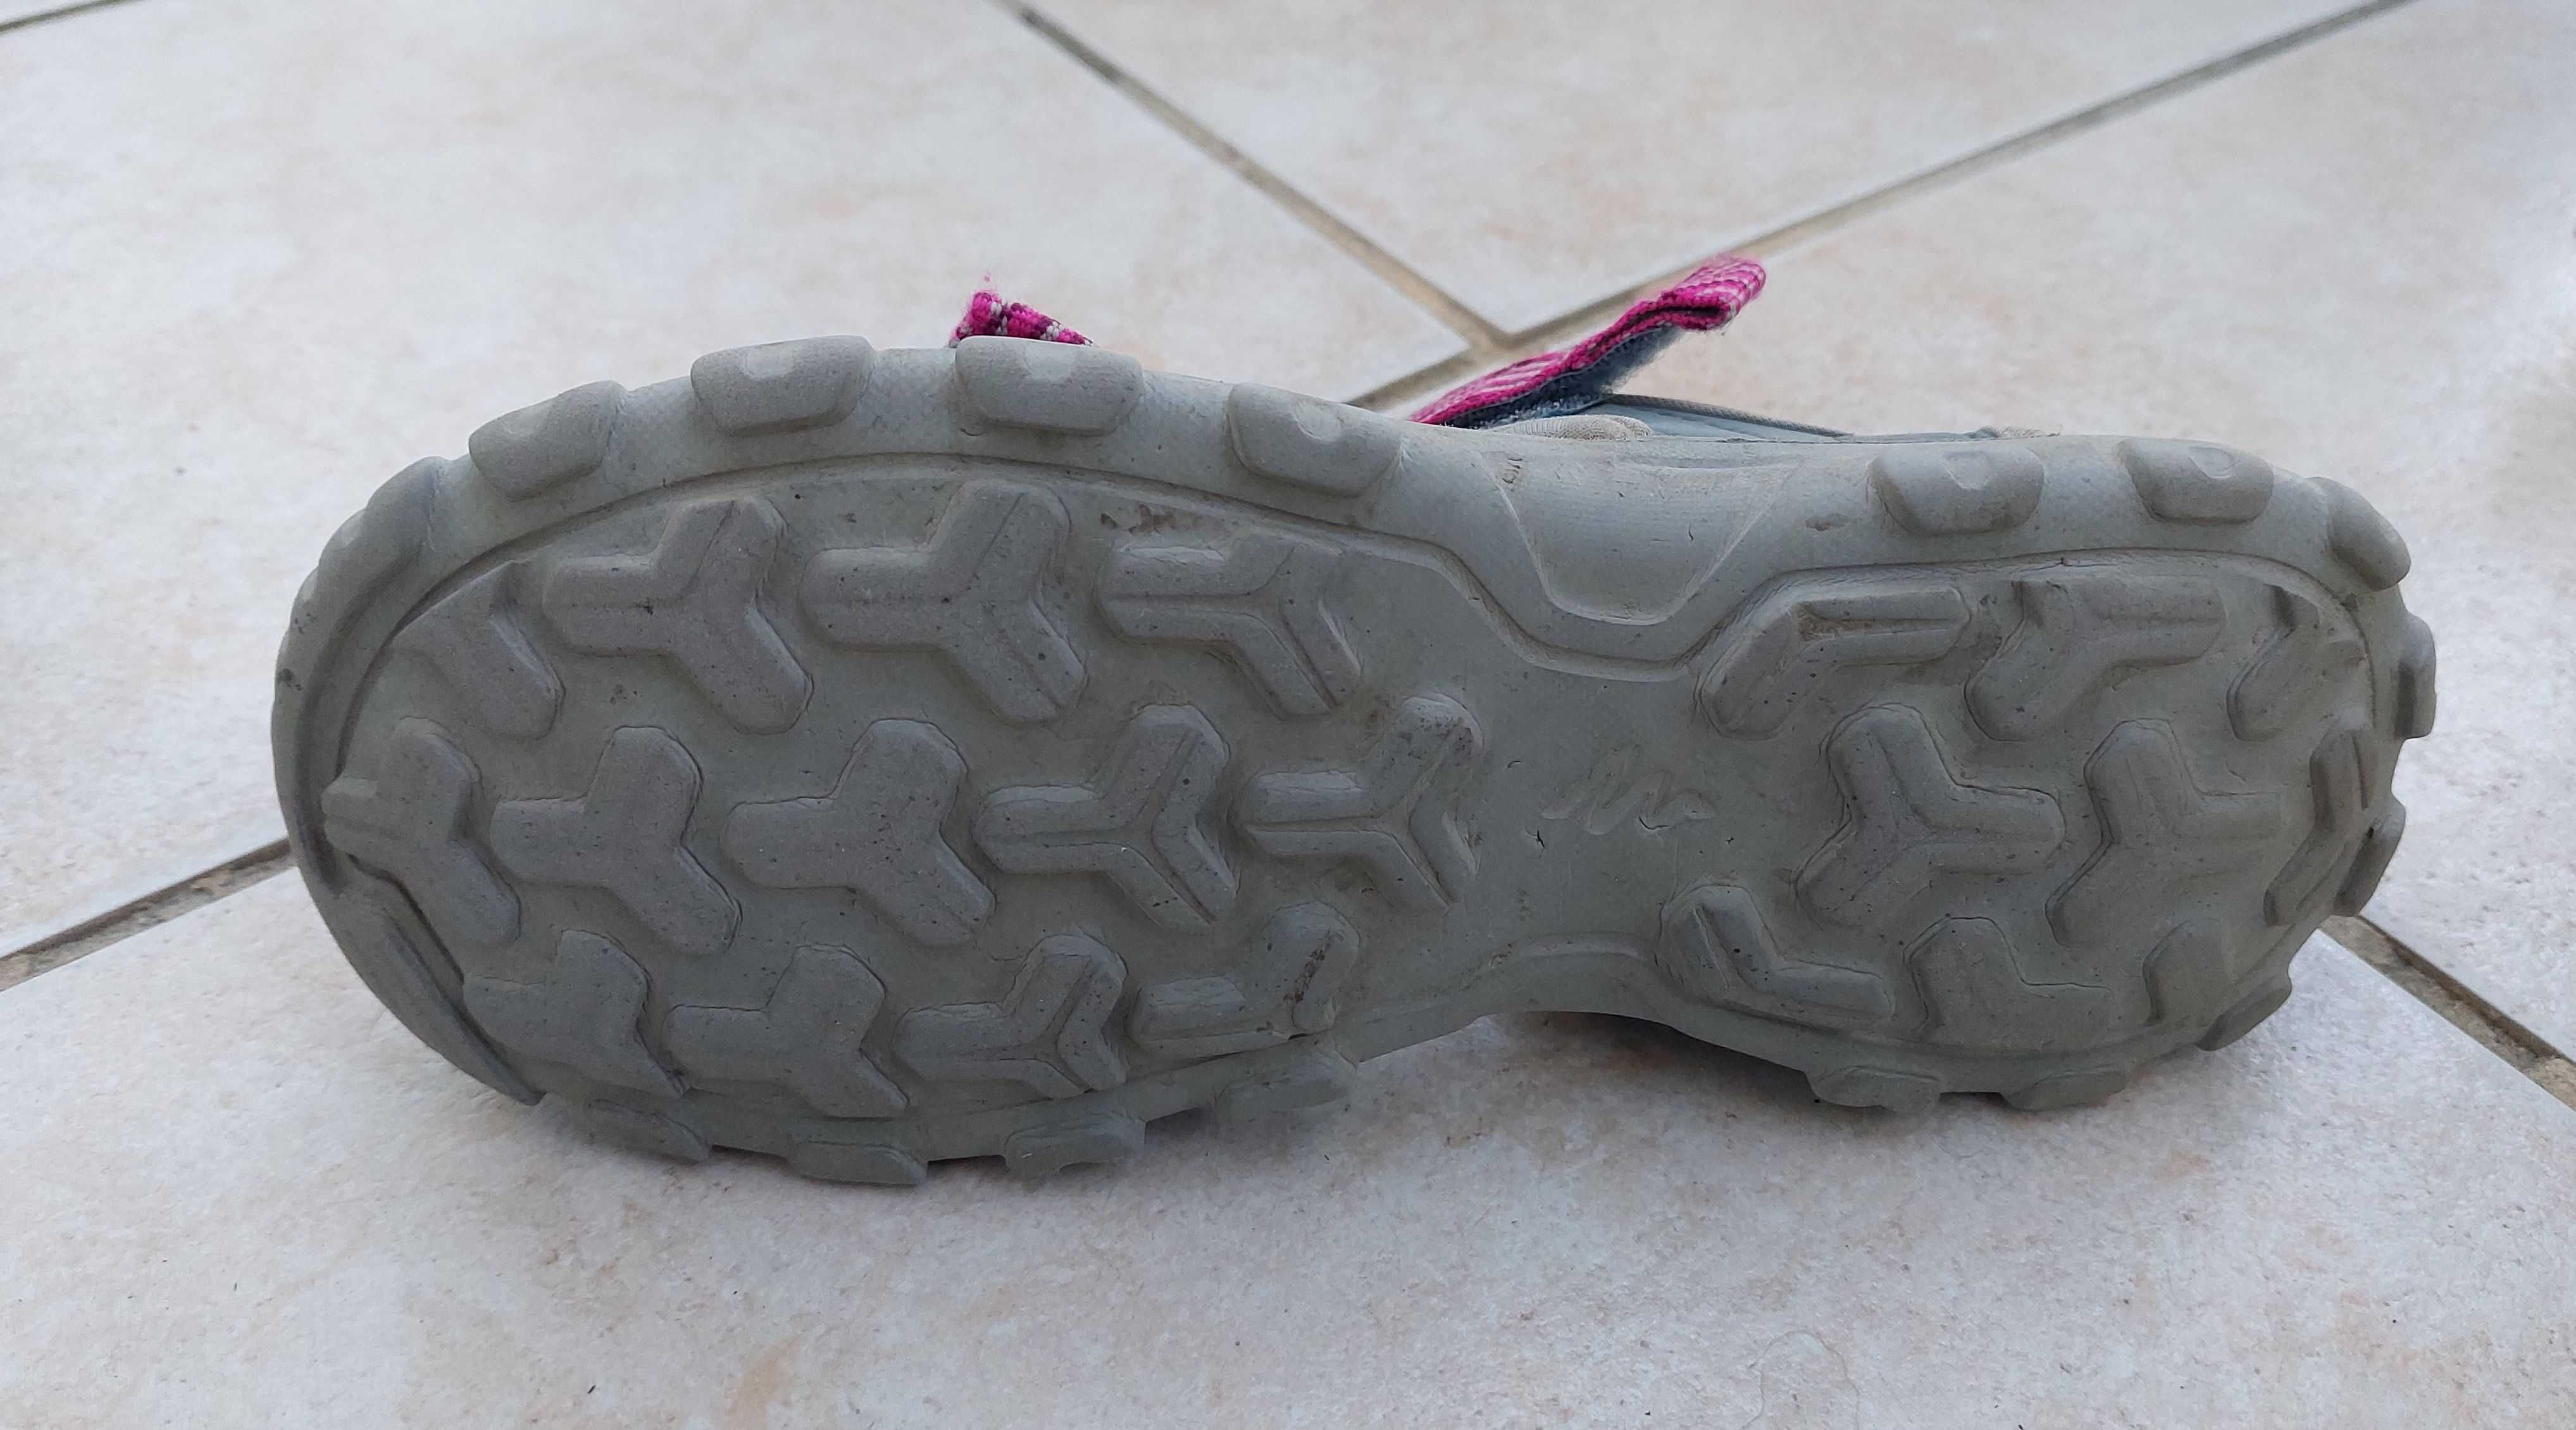 Sandałki turystyczne quechua MH100 rozmiar 36-37